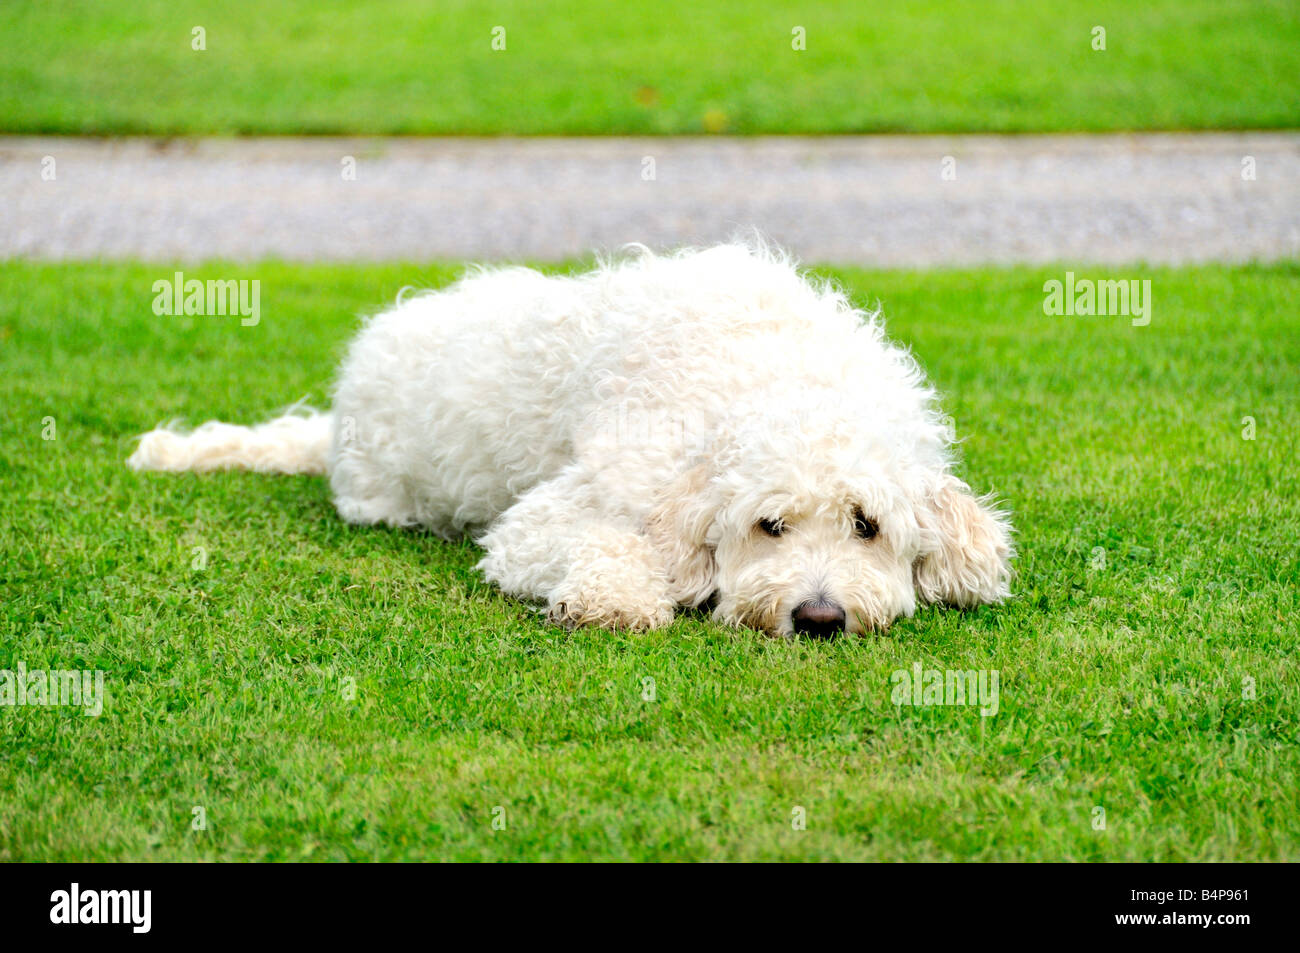 Goldendoodle blanche chien assis se trouvant à l'extérieur sur l'herbe Banque D'Images